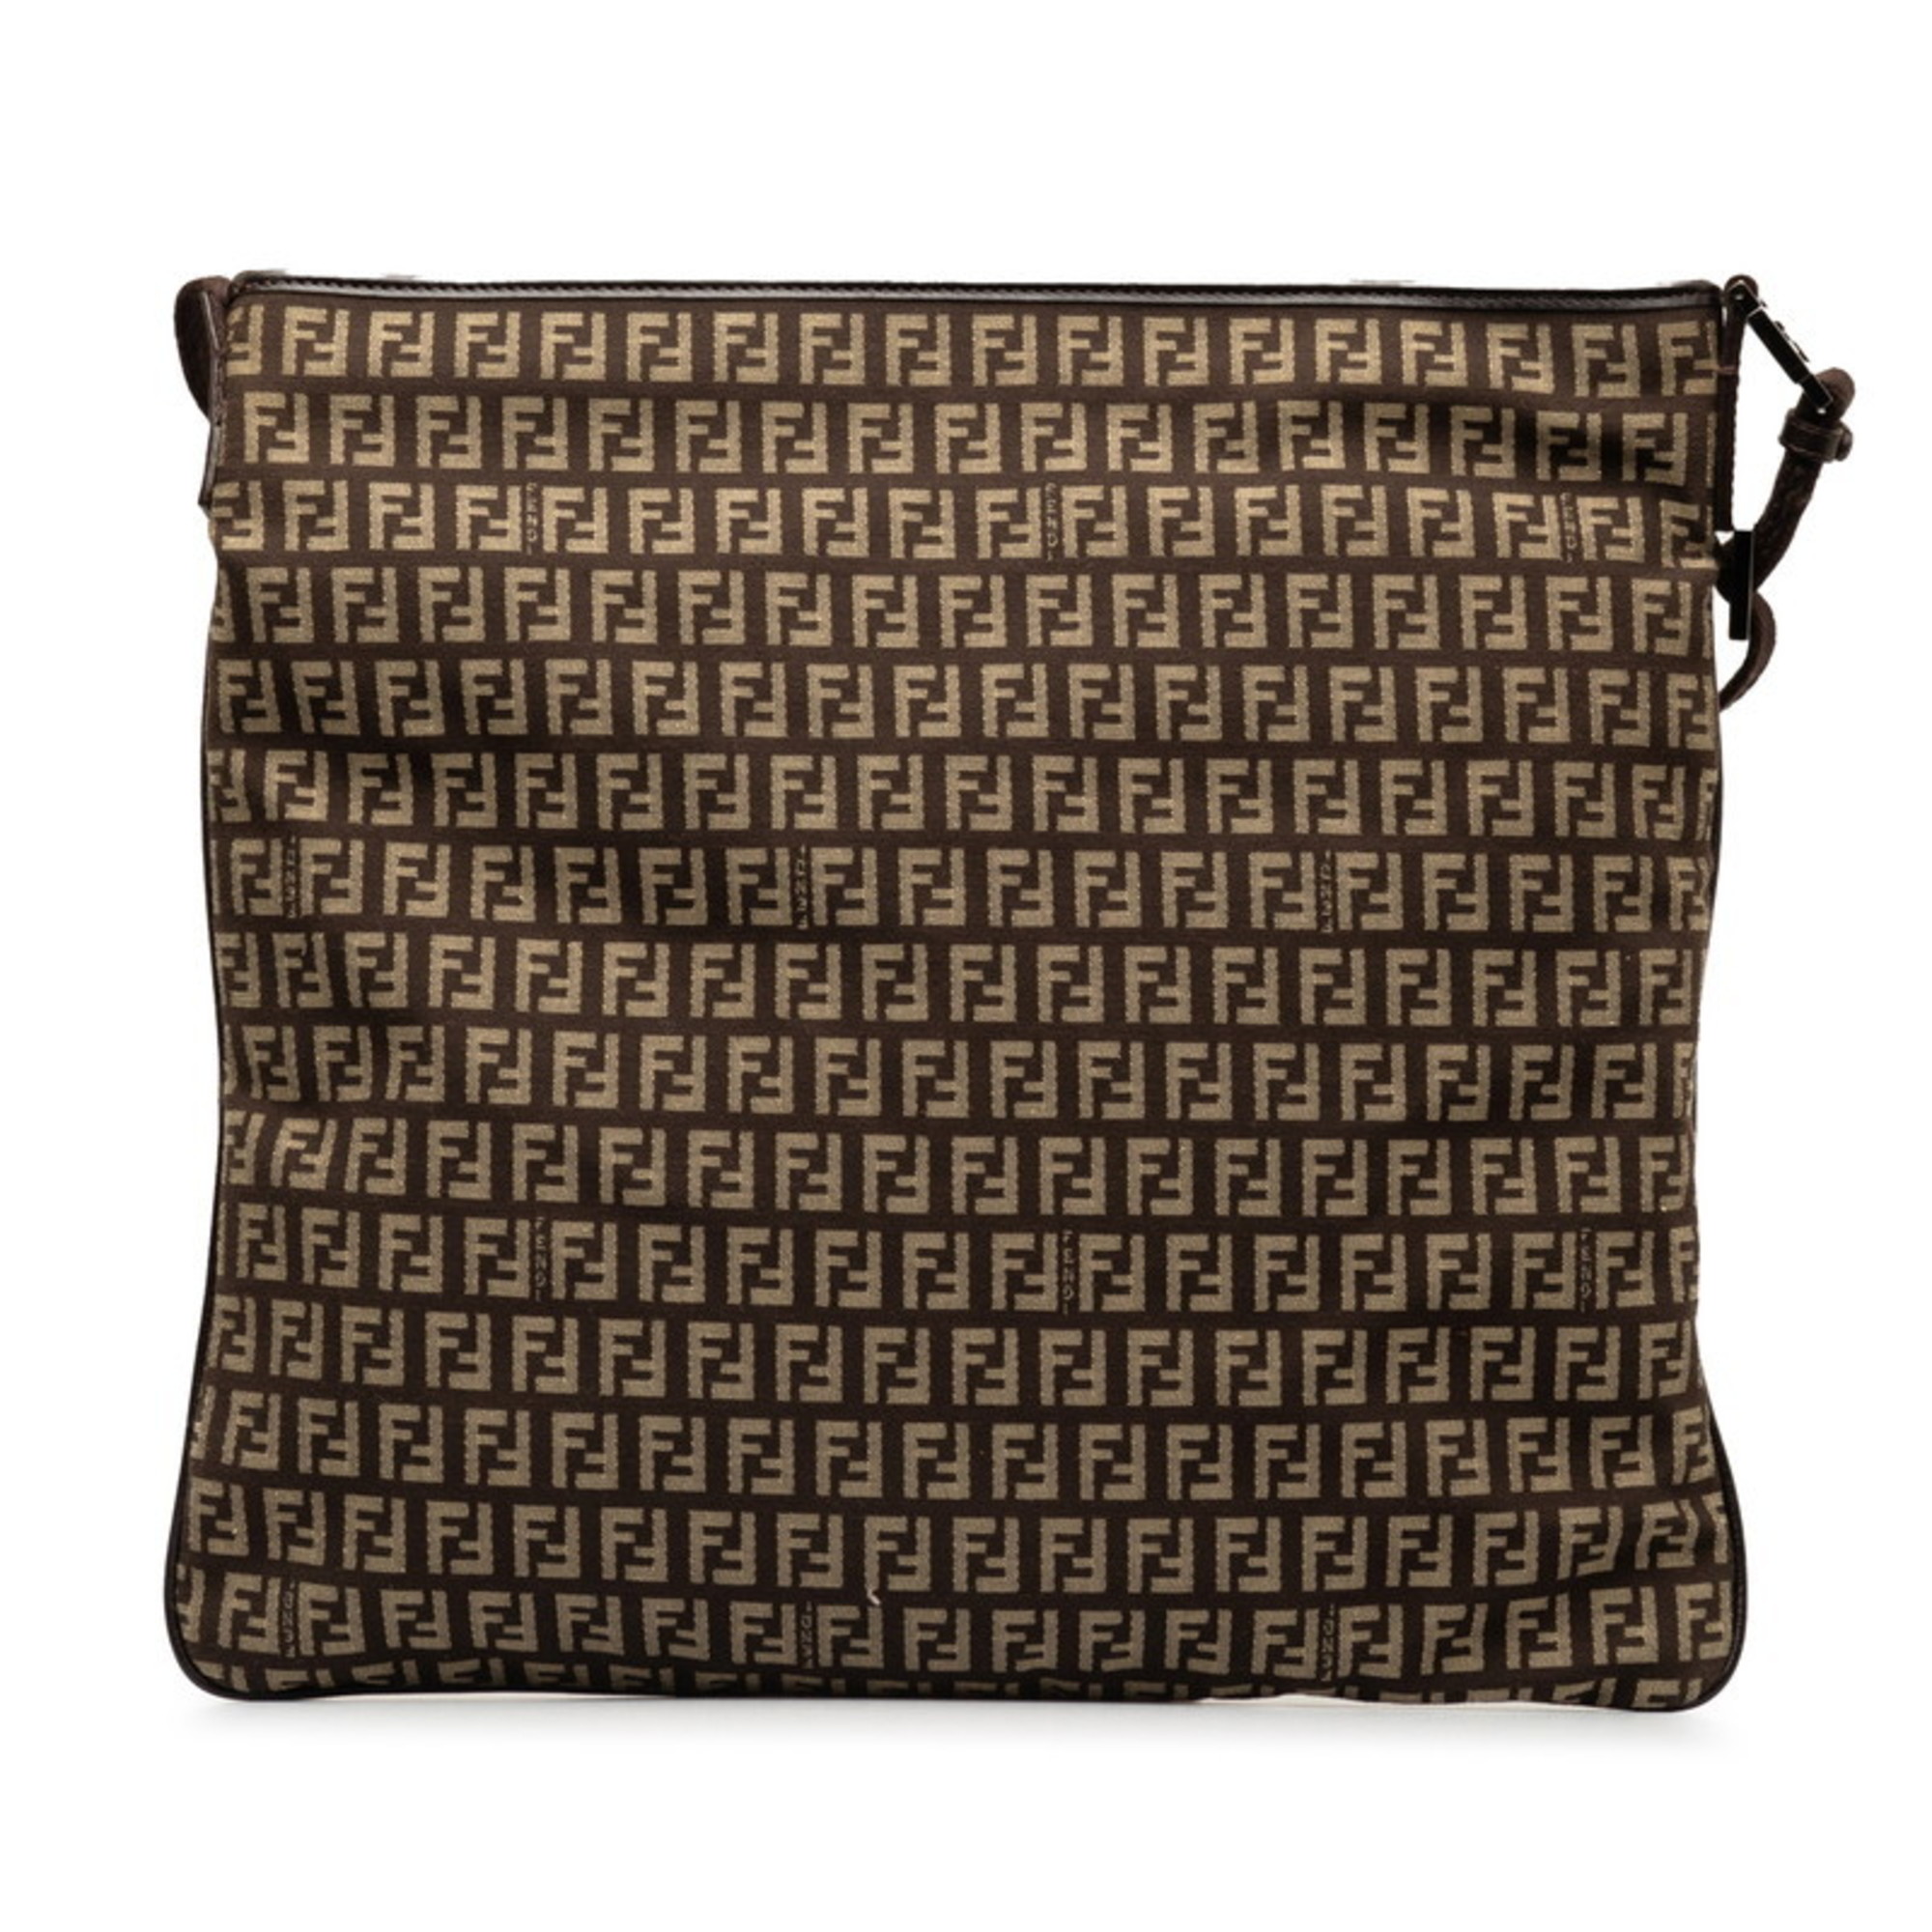 FENDI Zucchino Shoulder Bag 8BT080 Brown Beige Canvas Leather Women's